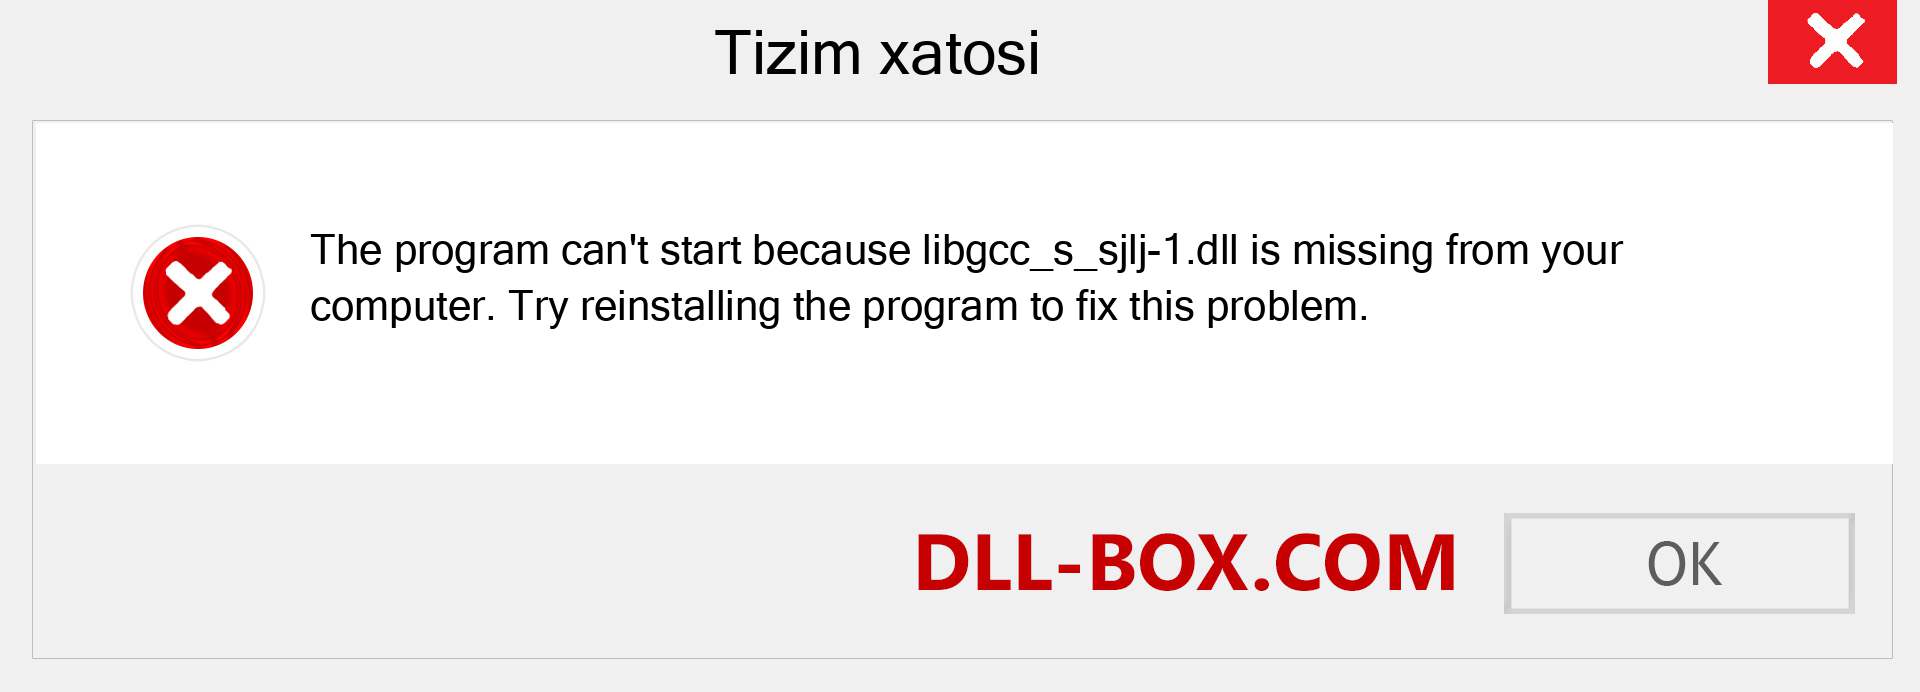 libgcc_s_sjlj-1.dll fayli yo'qolganmi?. Windows 7, 8, 10 uchun yuklab olish - Windowsda libgcc_s_sjlj-1 dll etishmayotgan xatoni tuzating, rasmlar, rasmlar